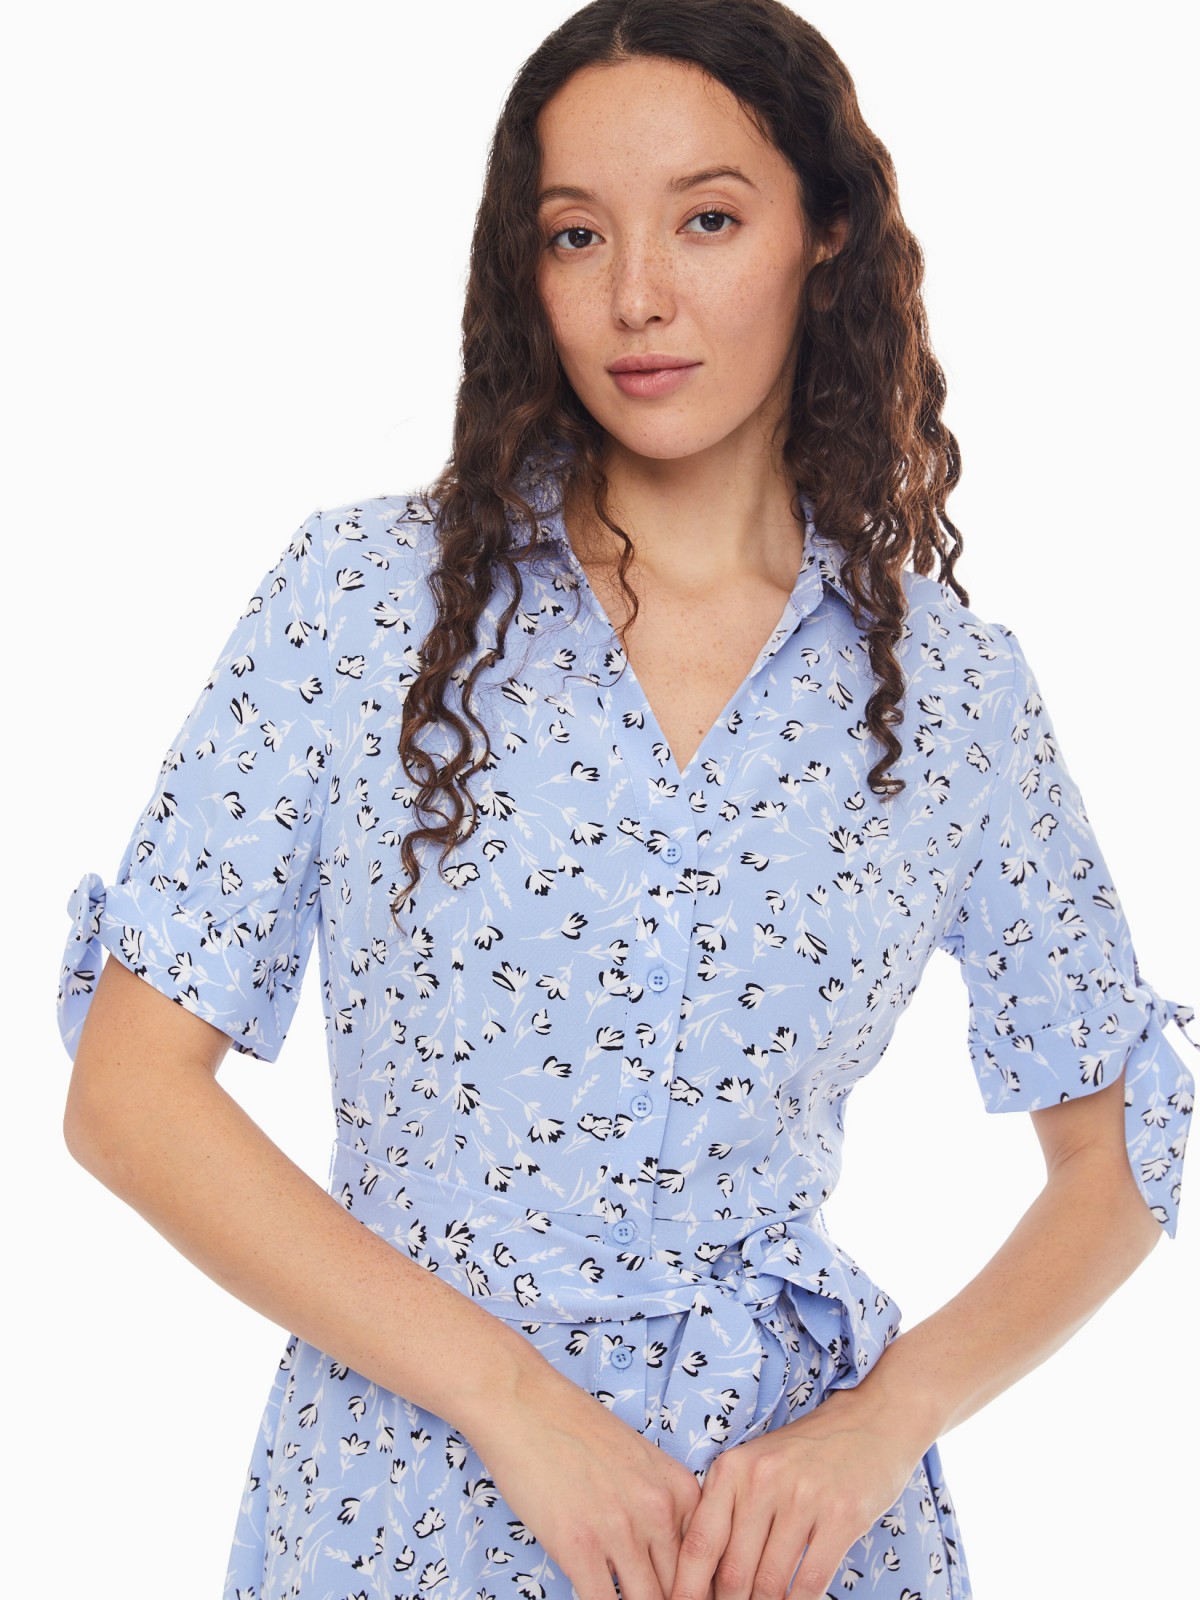 Платье-рубашка с поясом и акцентными короткими рукавами zolla 024138240412, цвет светло-голубой, размер XS - фото 3